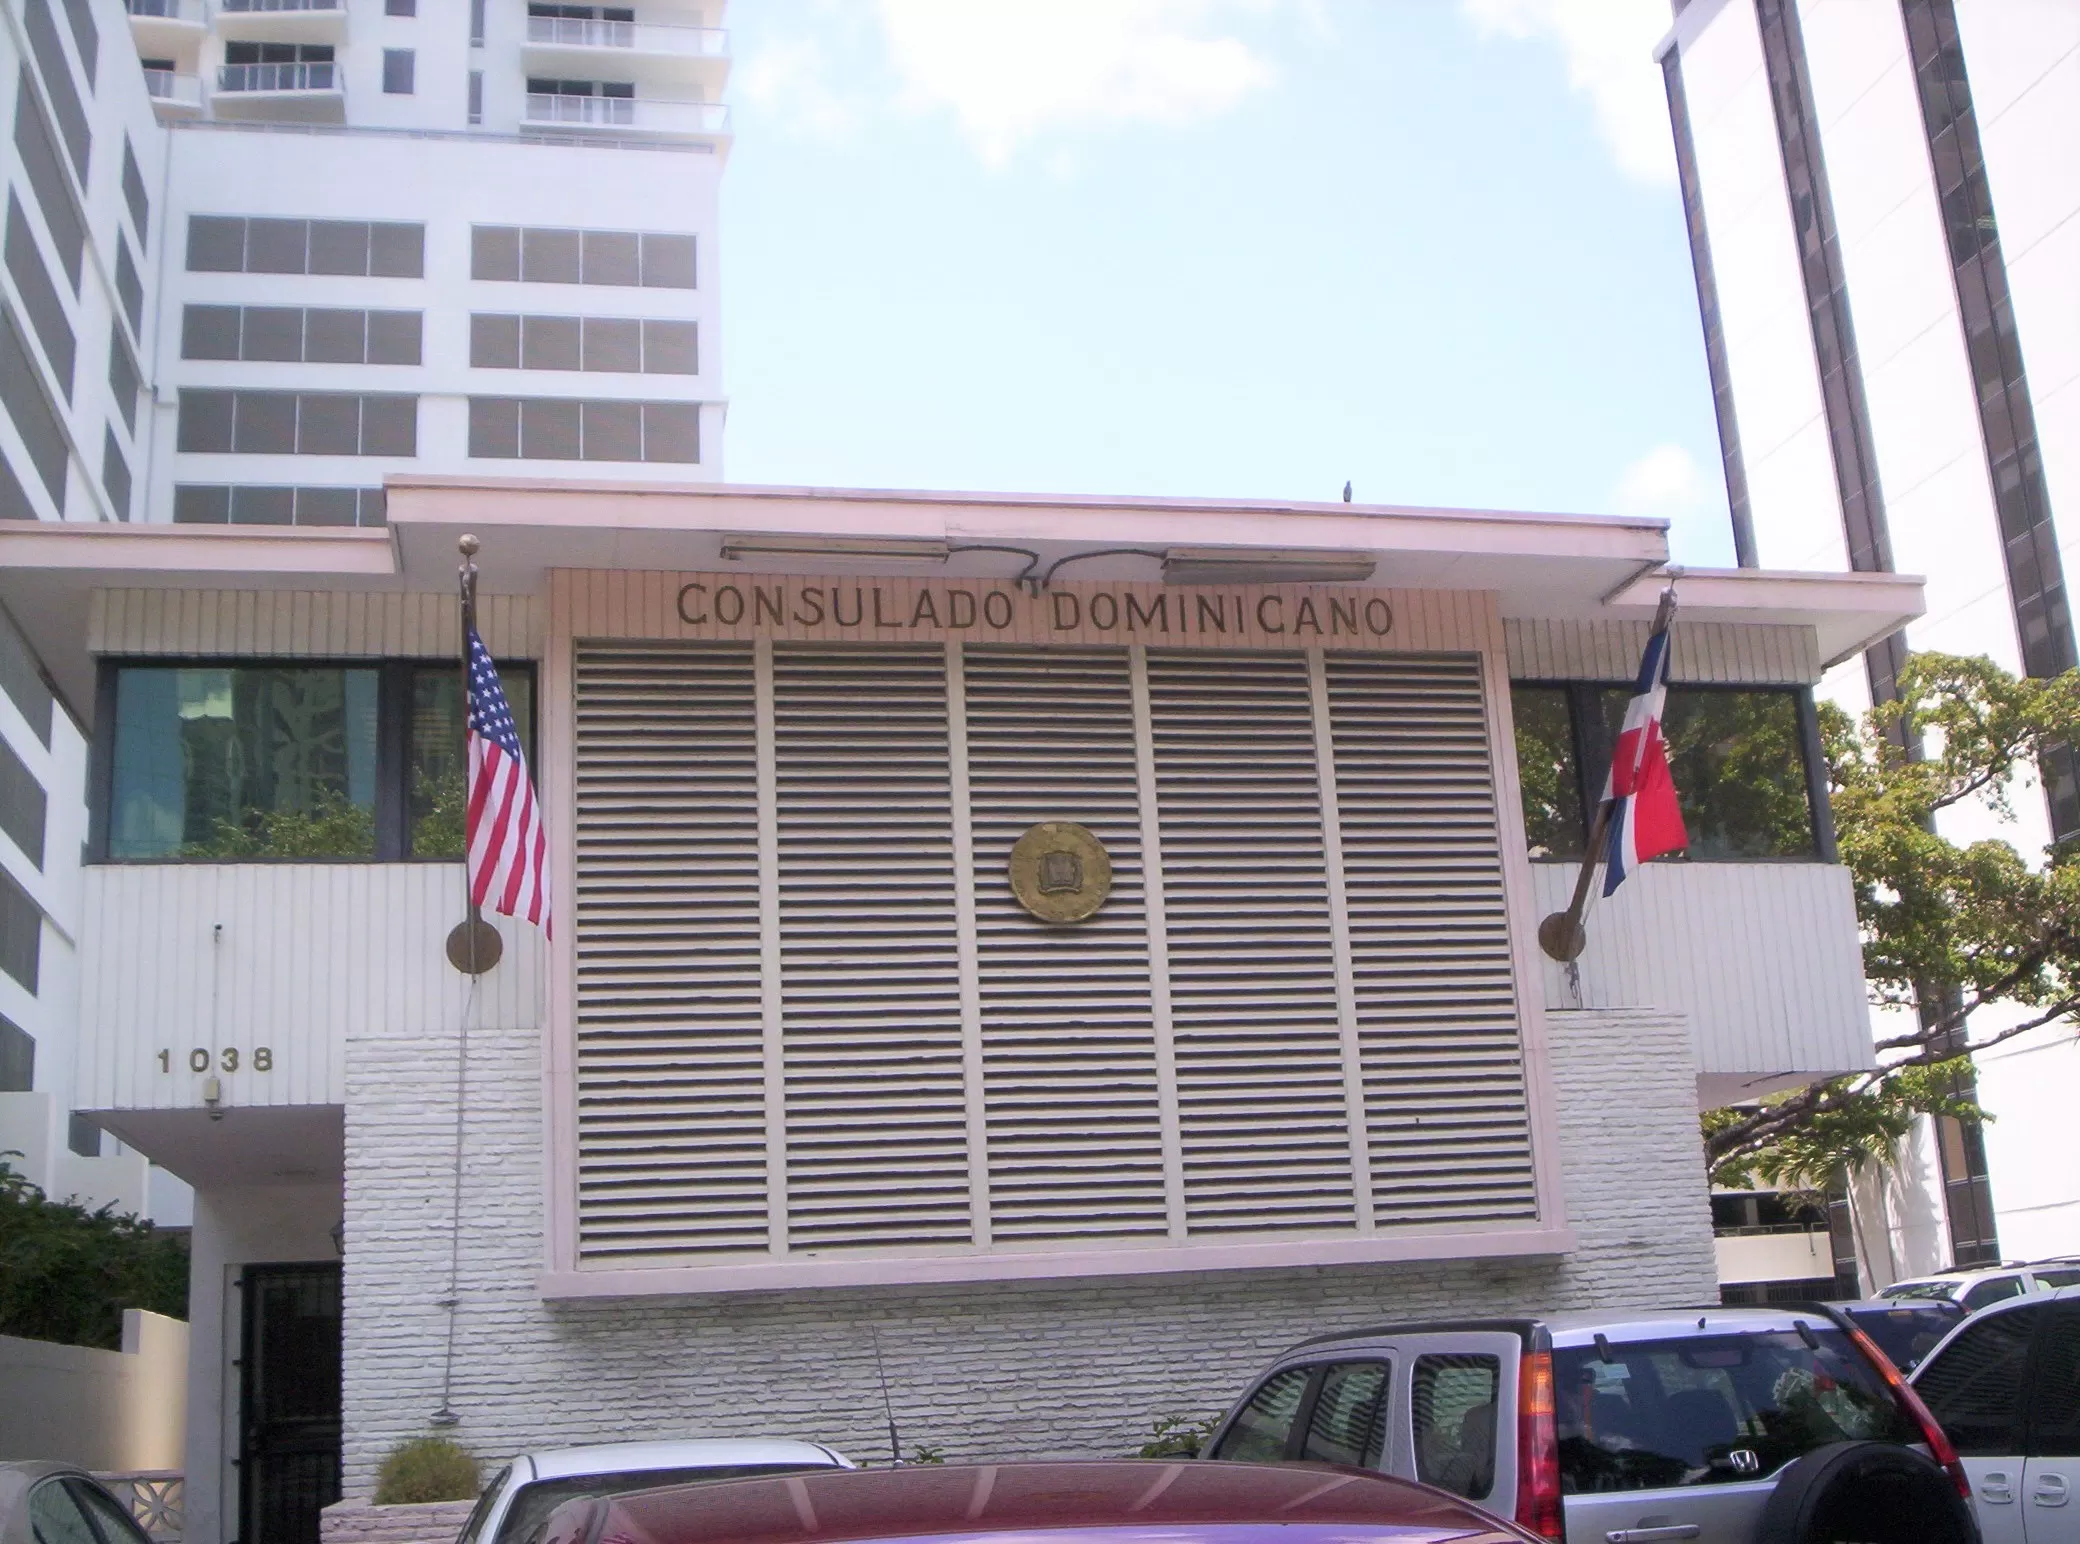 Consulado General dominicano en Miami informa “falla telefónica”